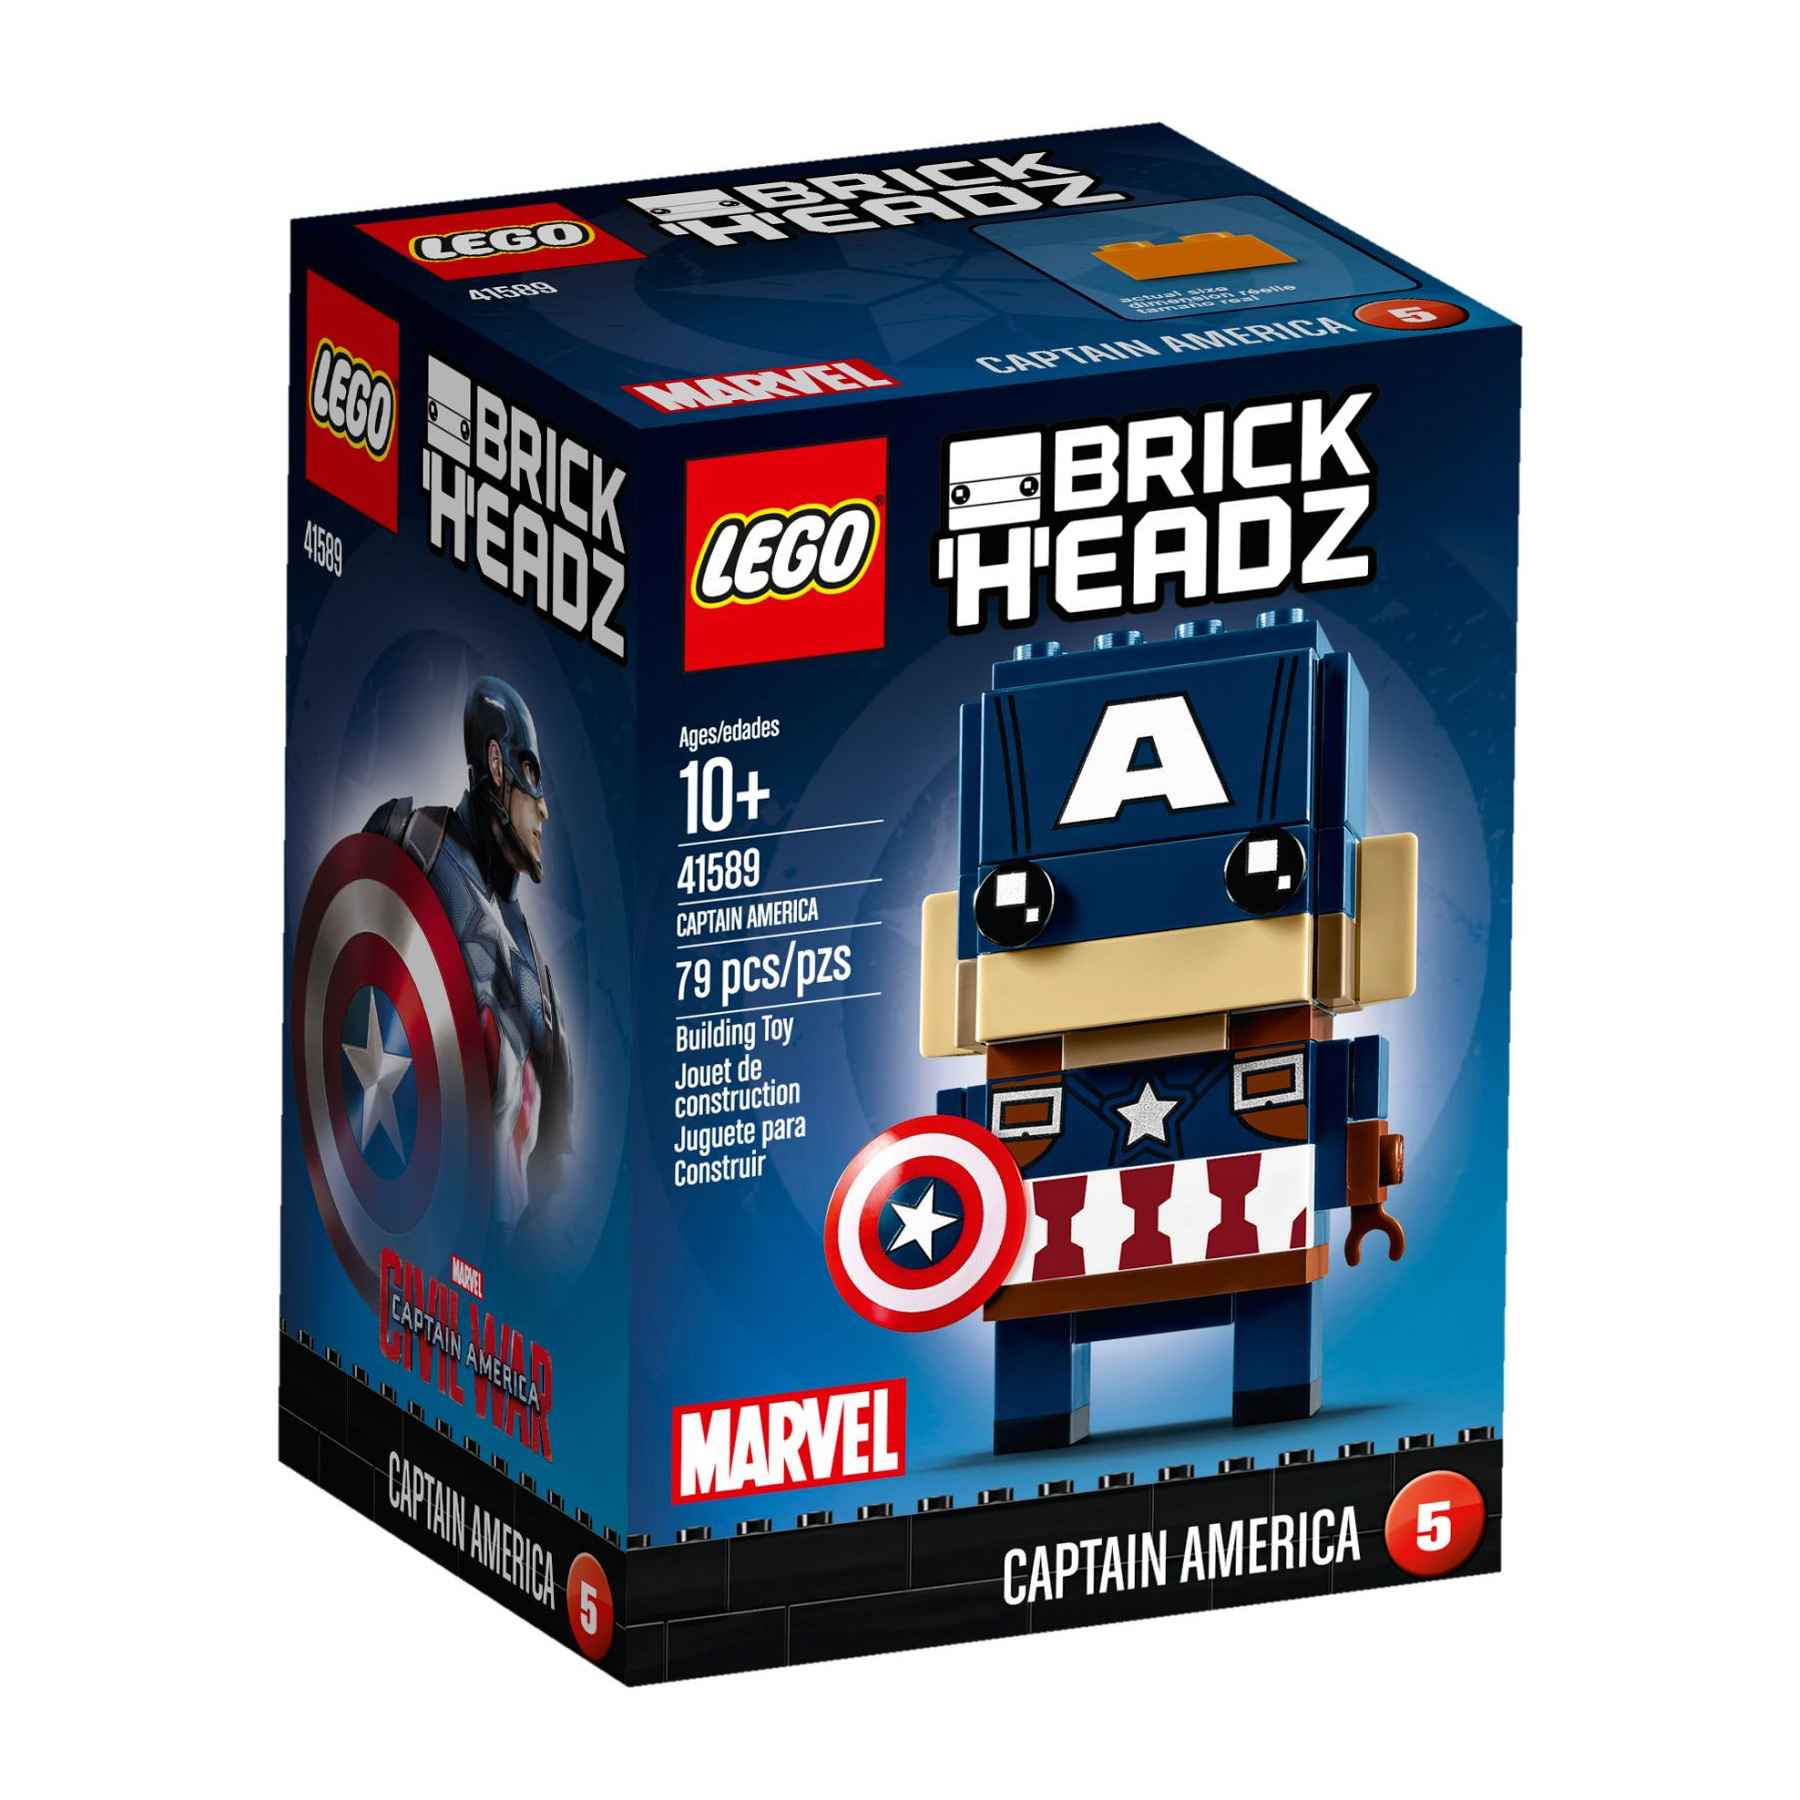 LEGO® BrickHeadz 41589 Captain America günstig kaufen | brickstore.at
